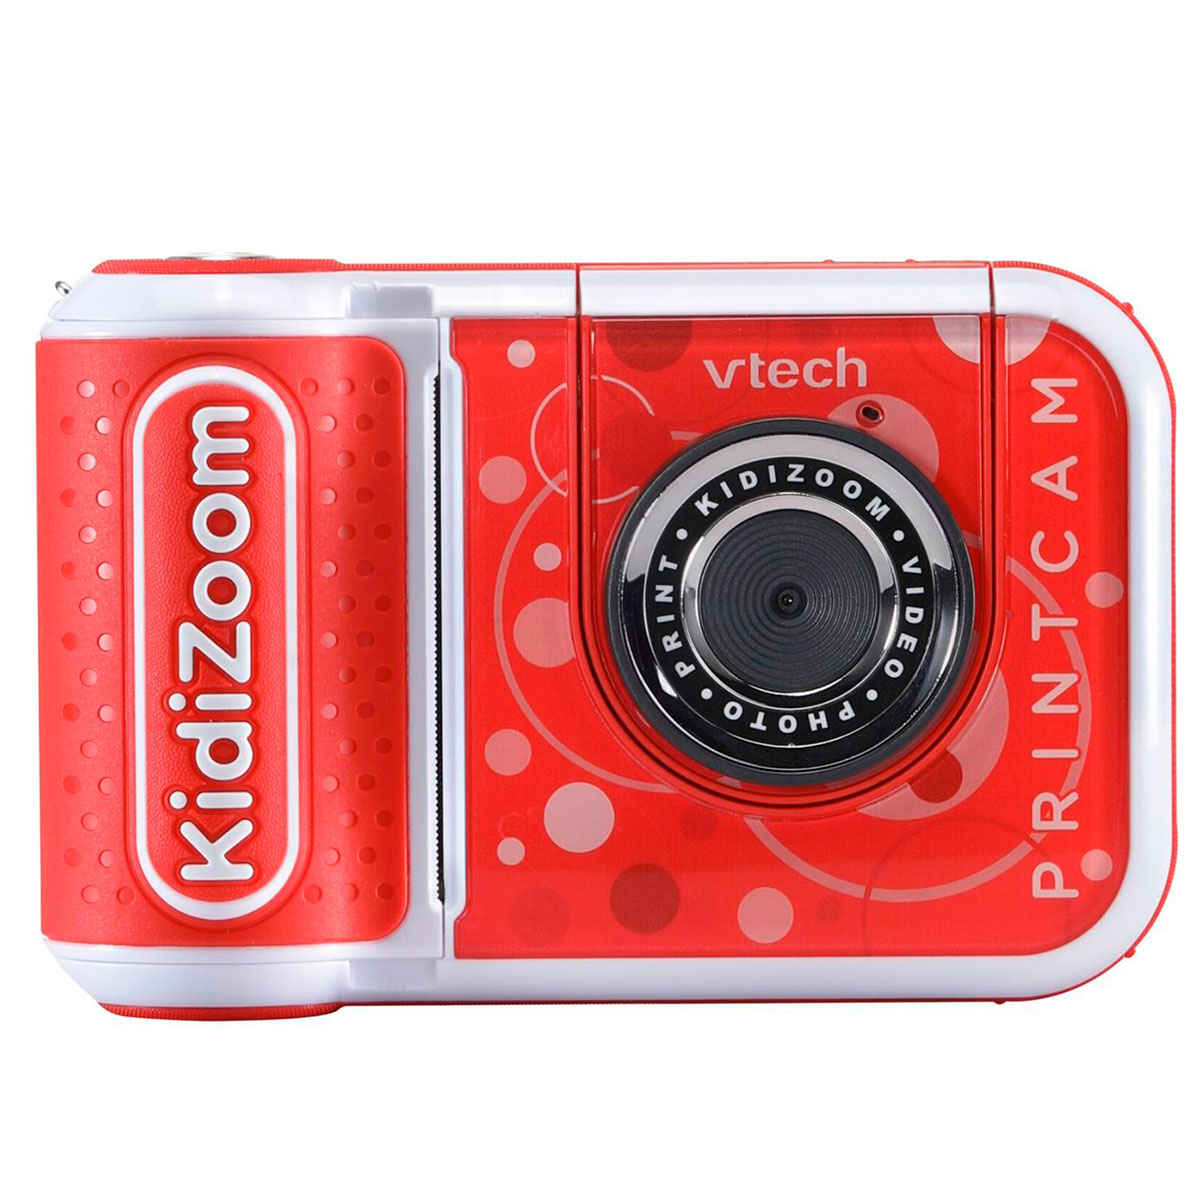 Udsigt lettelse dø VTech Kidizoom Print Cam Digitalt kamera (m/printer) Rød